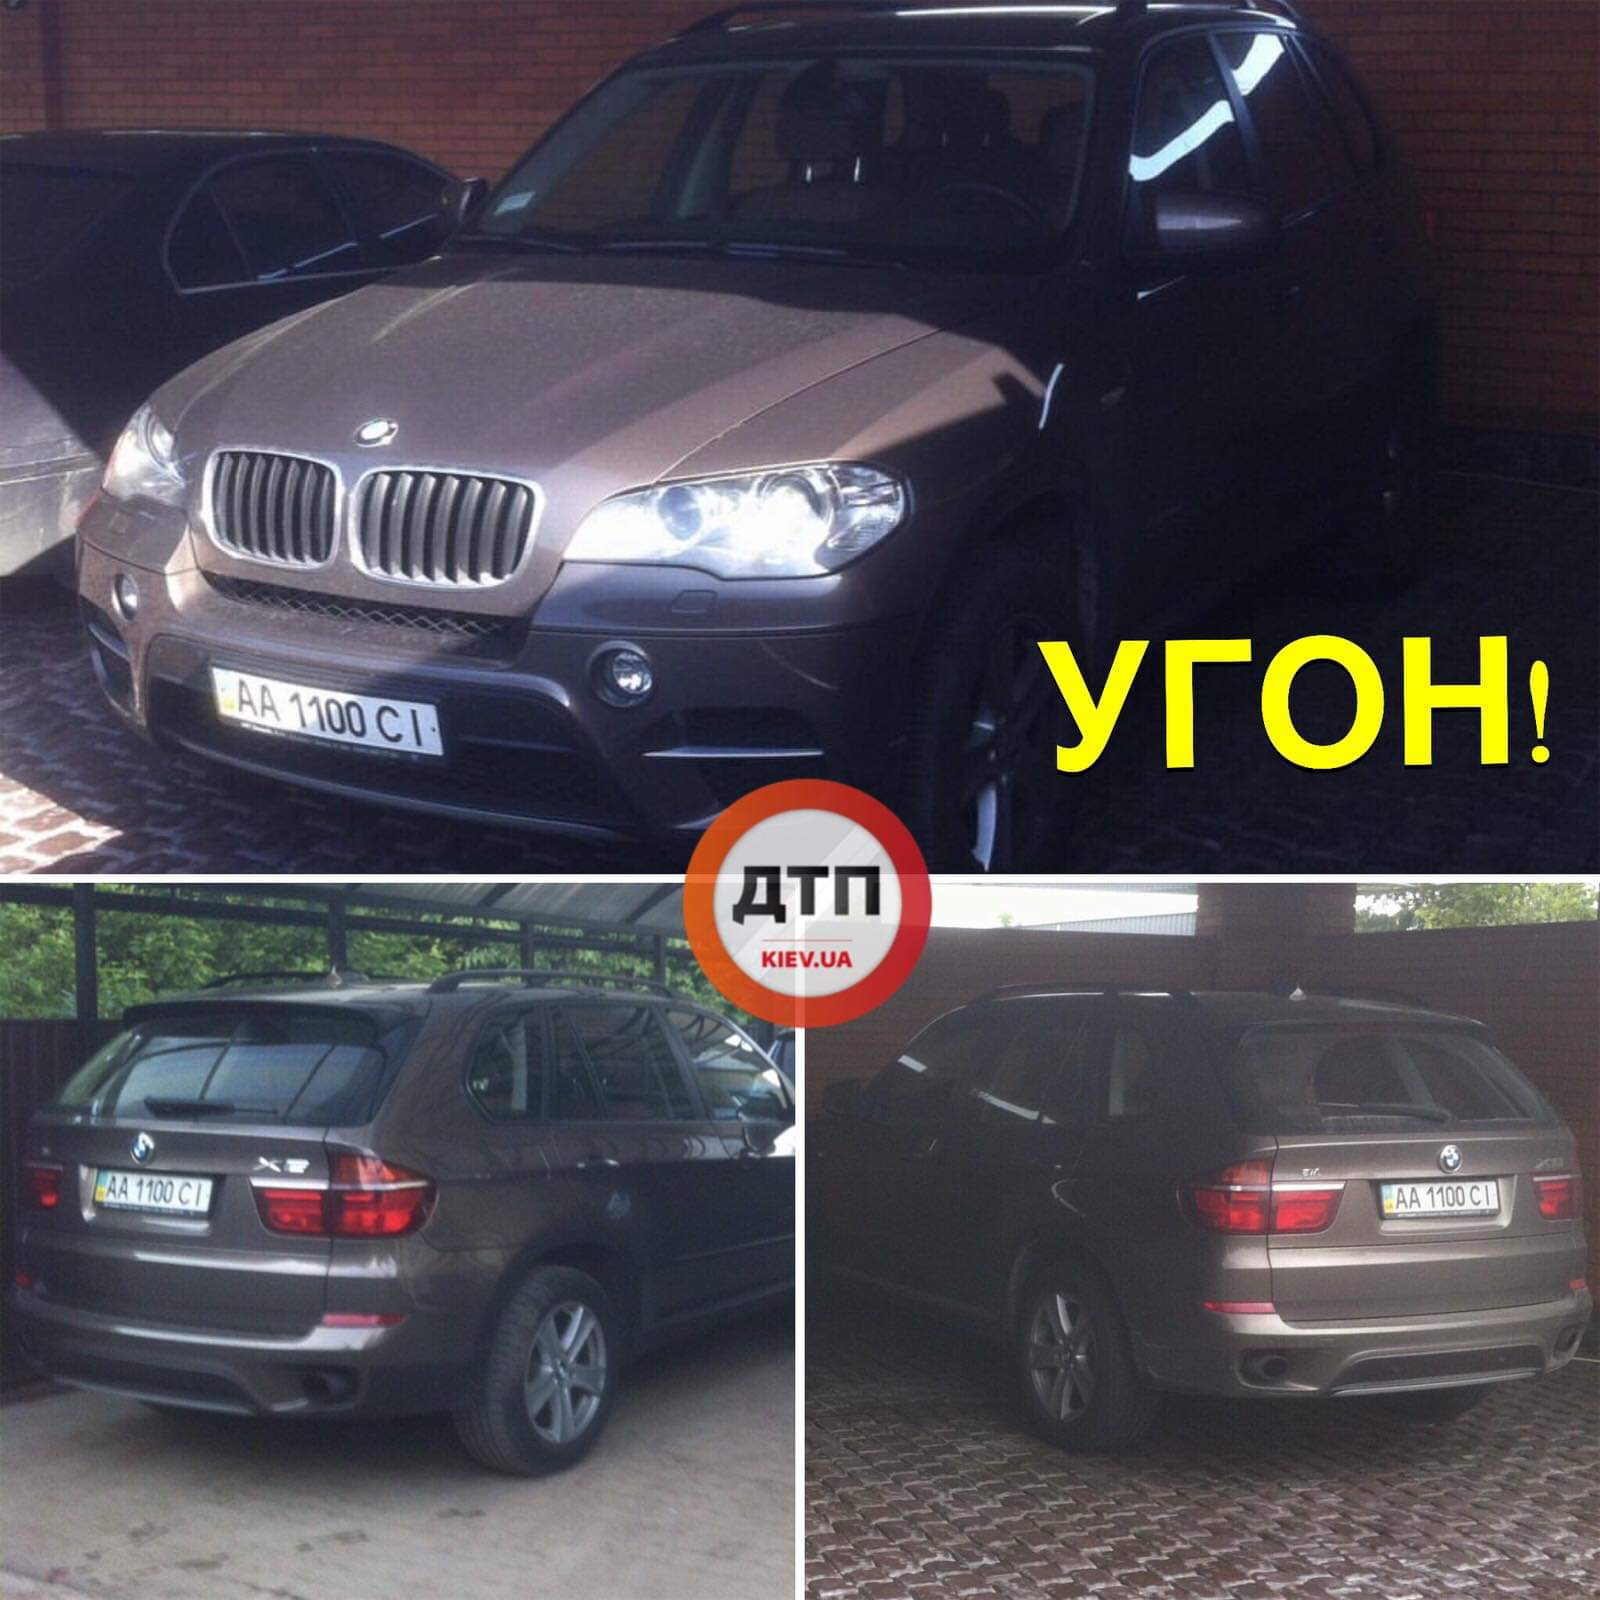 В Печерском районе столицы угнали автомобиль BMW X5 (АА1100СI)